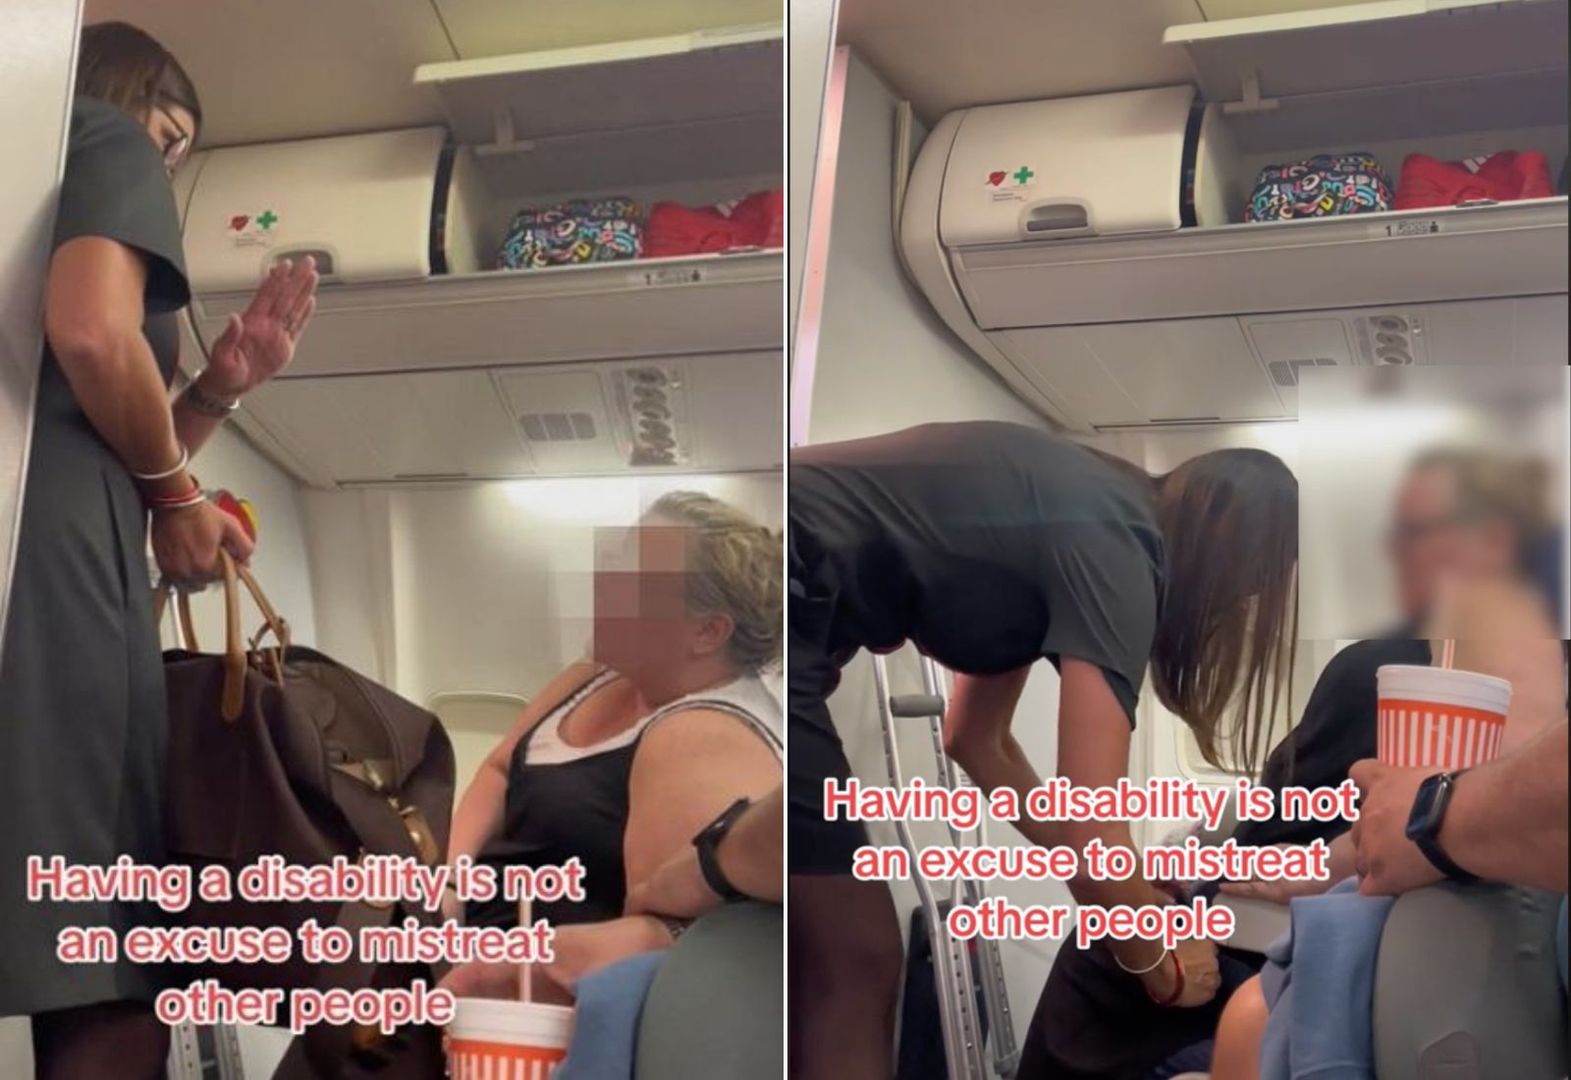 Stewardesa miała dość zachowania pasażerki. Internauci są zdegustowani. "Myślała, że jest jej służącą?"